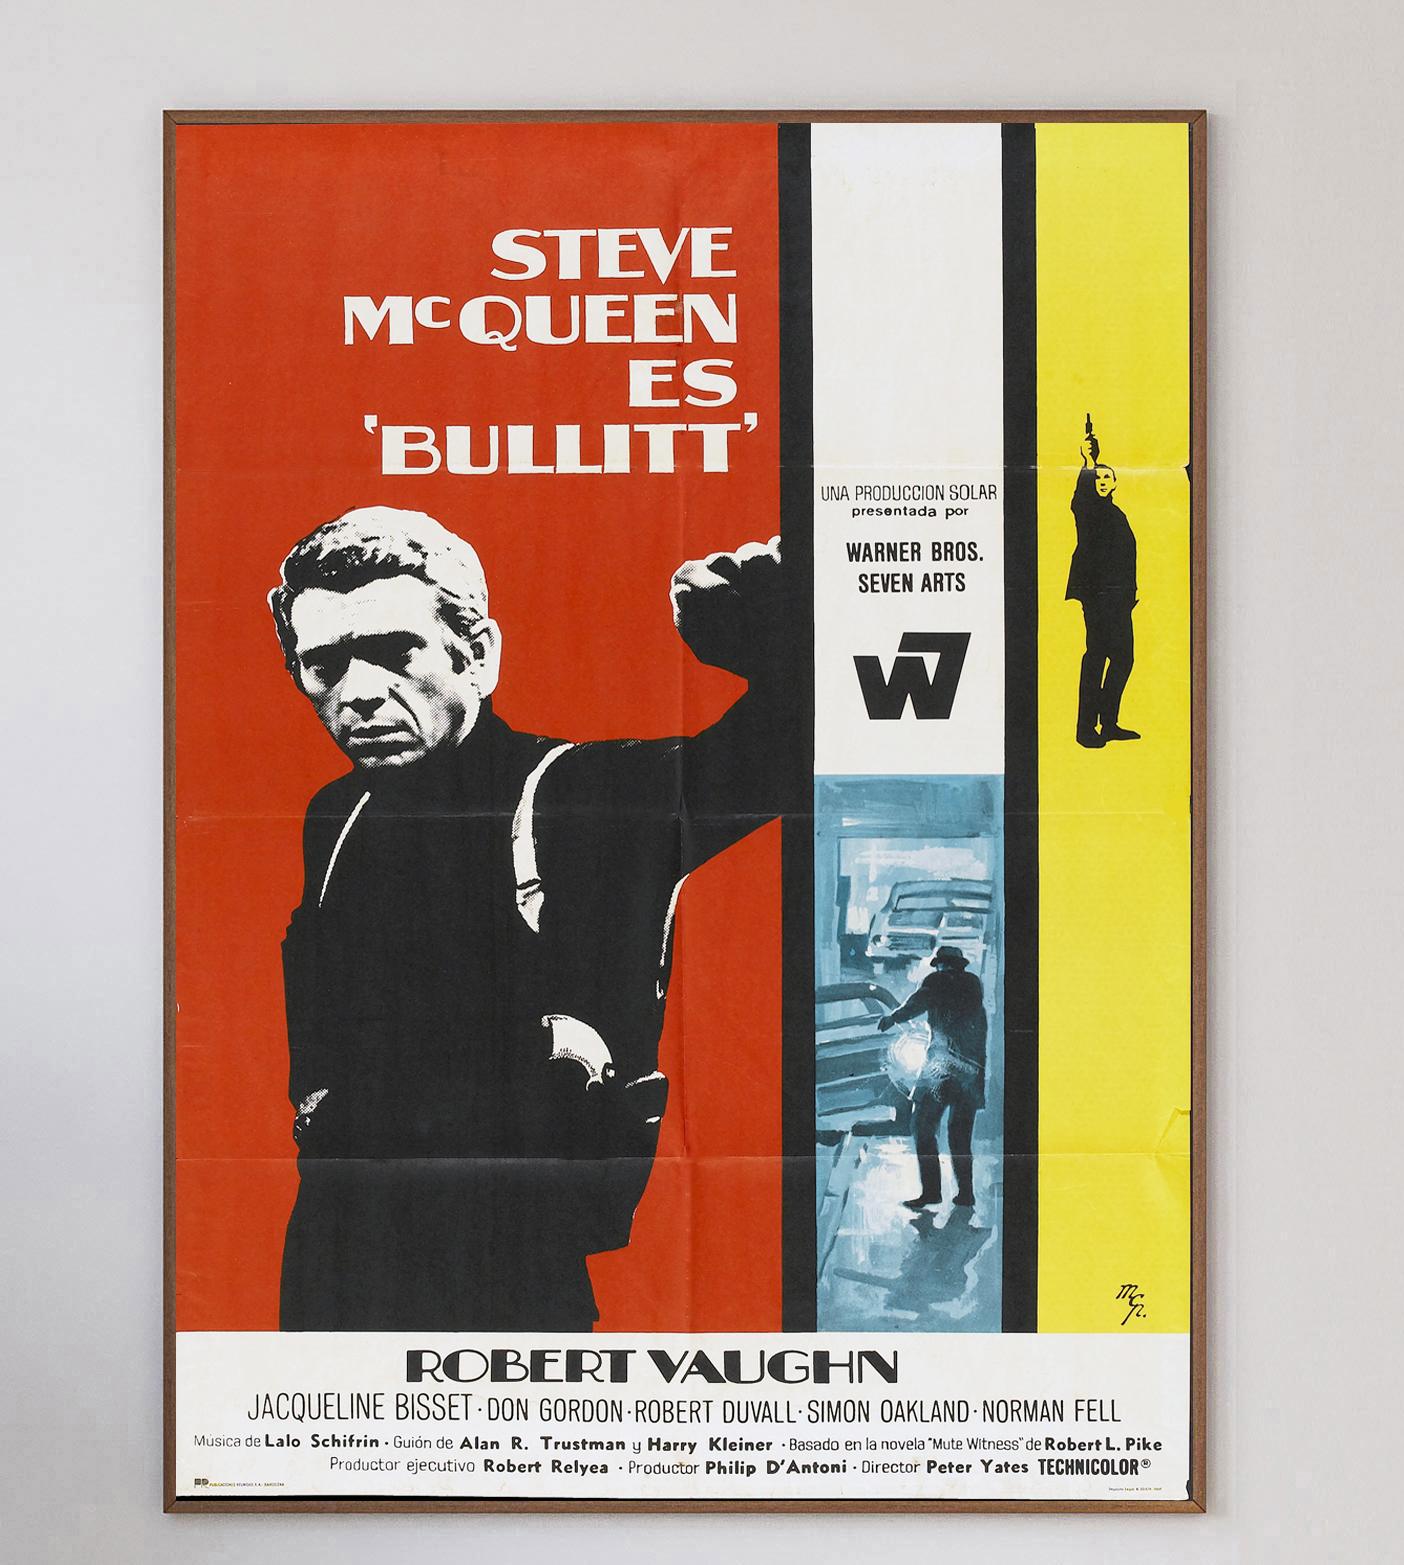 Représentant l'image iconique en noir et blanc de McQueen dans le rôle principal, cette affiche extrêmement rare et superbement conçue pour Bullitt est un trésor du milieu du siècle dernier.

Sorti en 1968, le thriller d'action Bullitt de Peters a